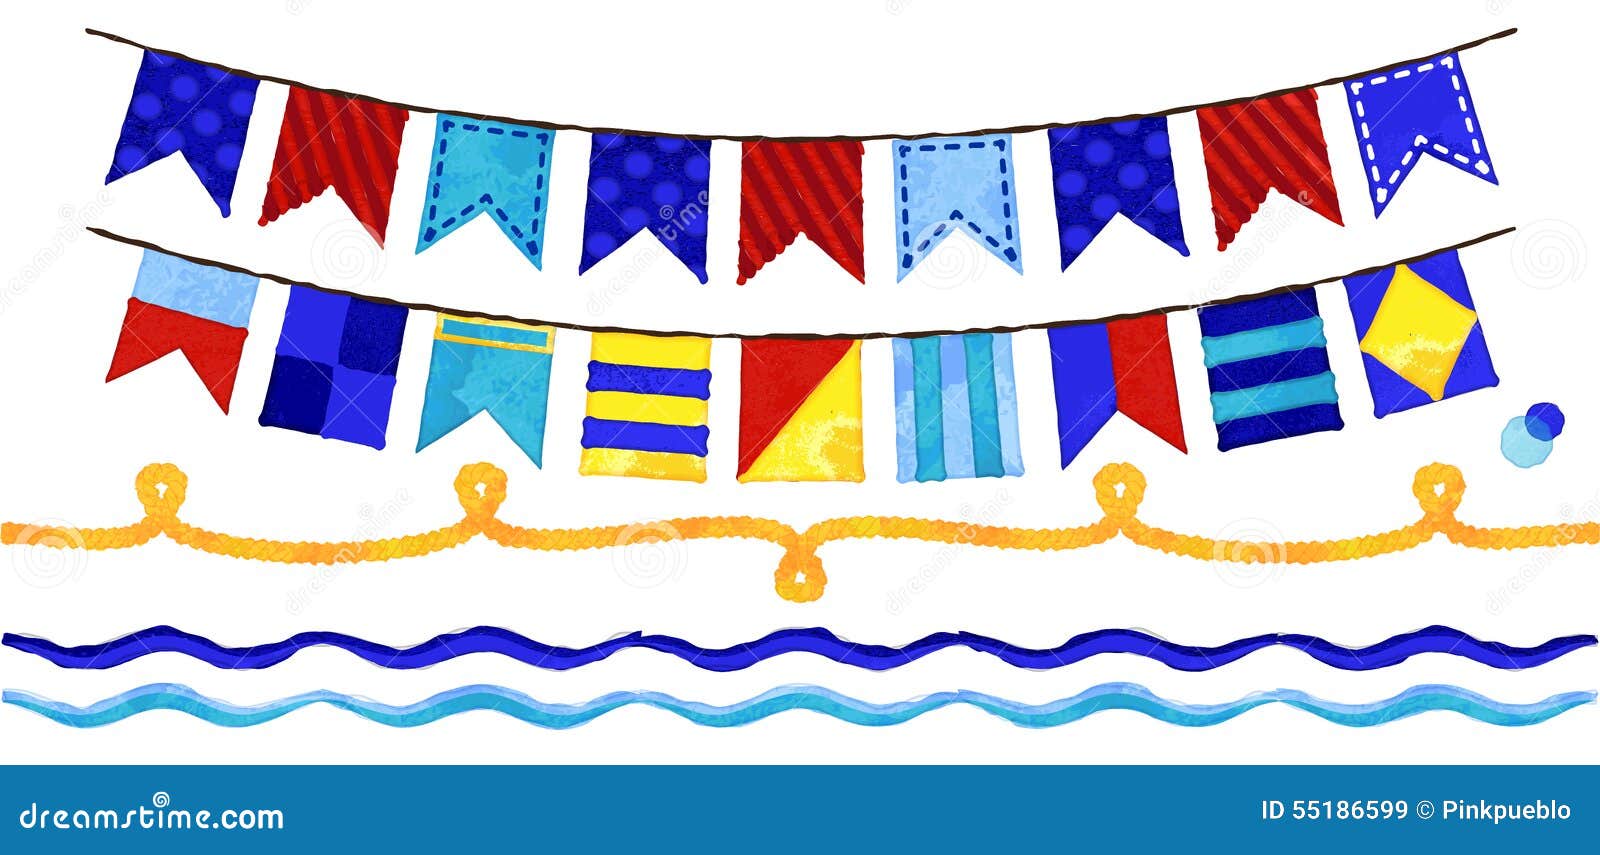 clip art nautical flags - photo #5